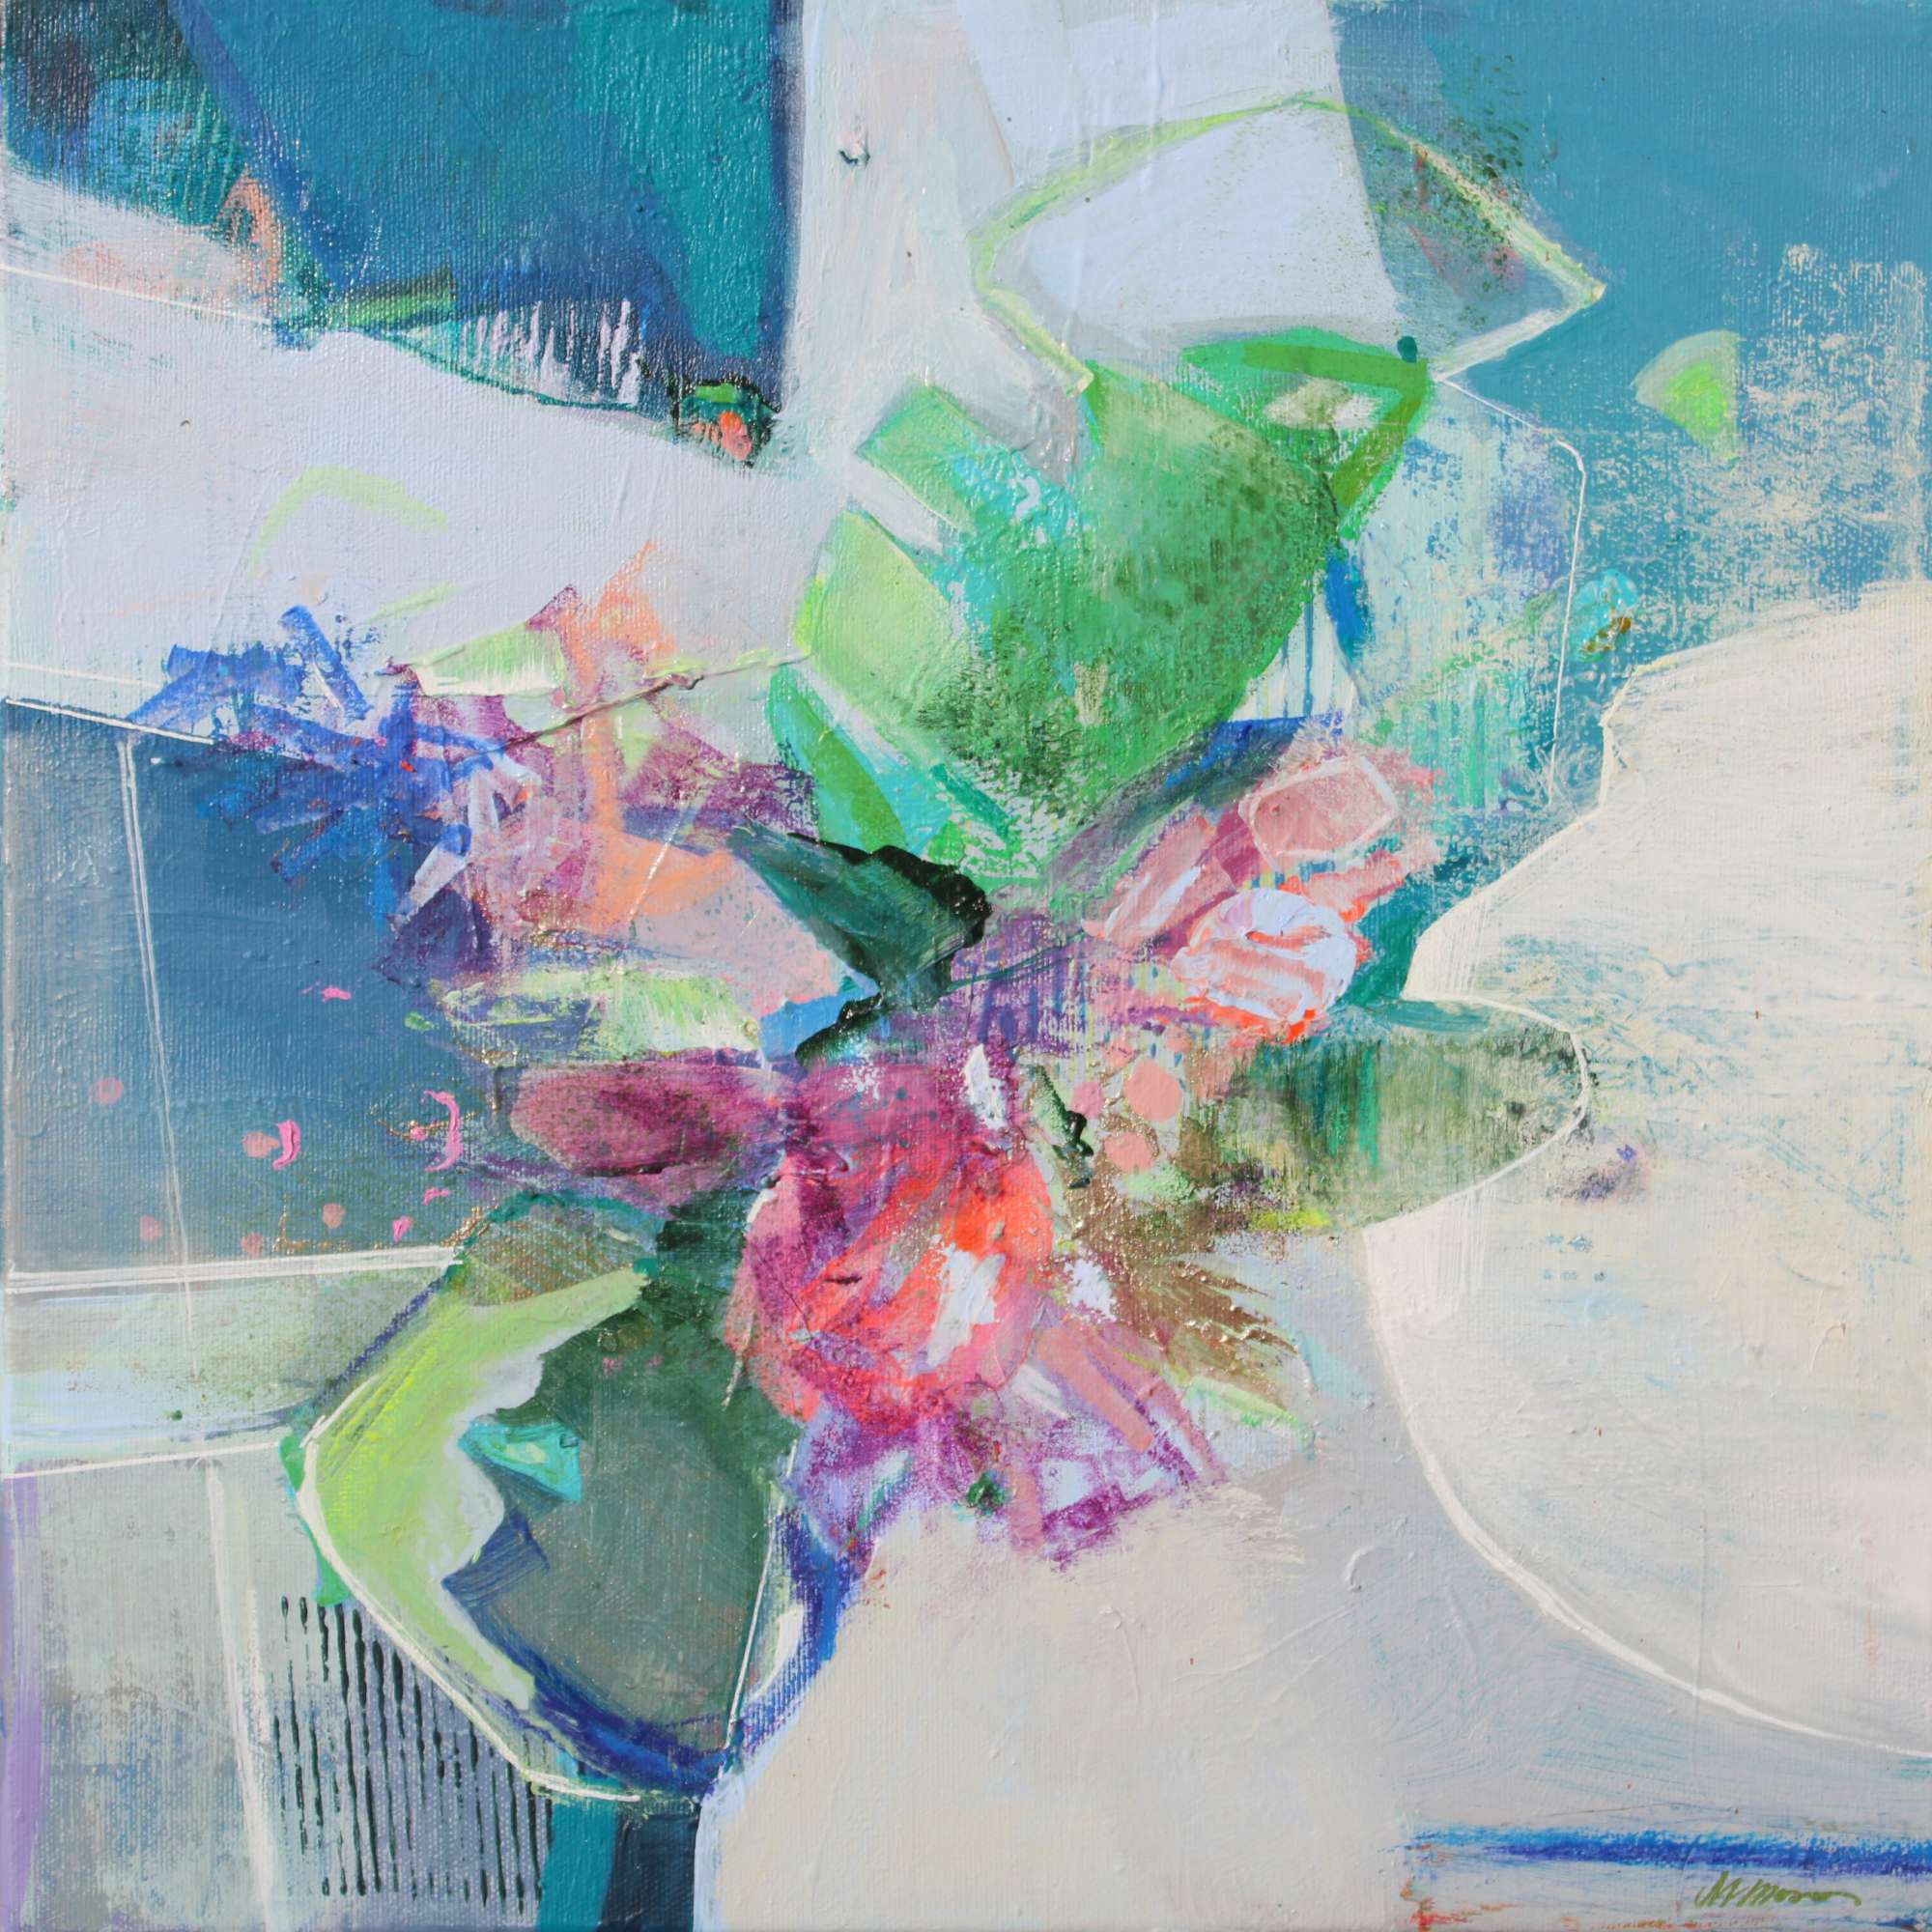 Une composition florale abstraite ludique de 2 tableaux de Magdelena Morey, 2022